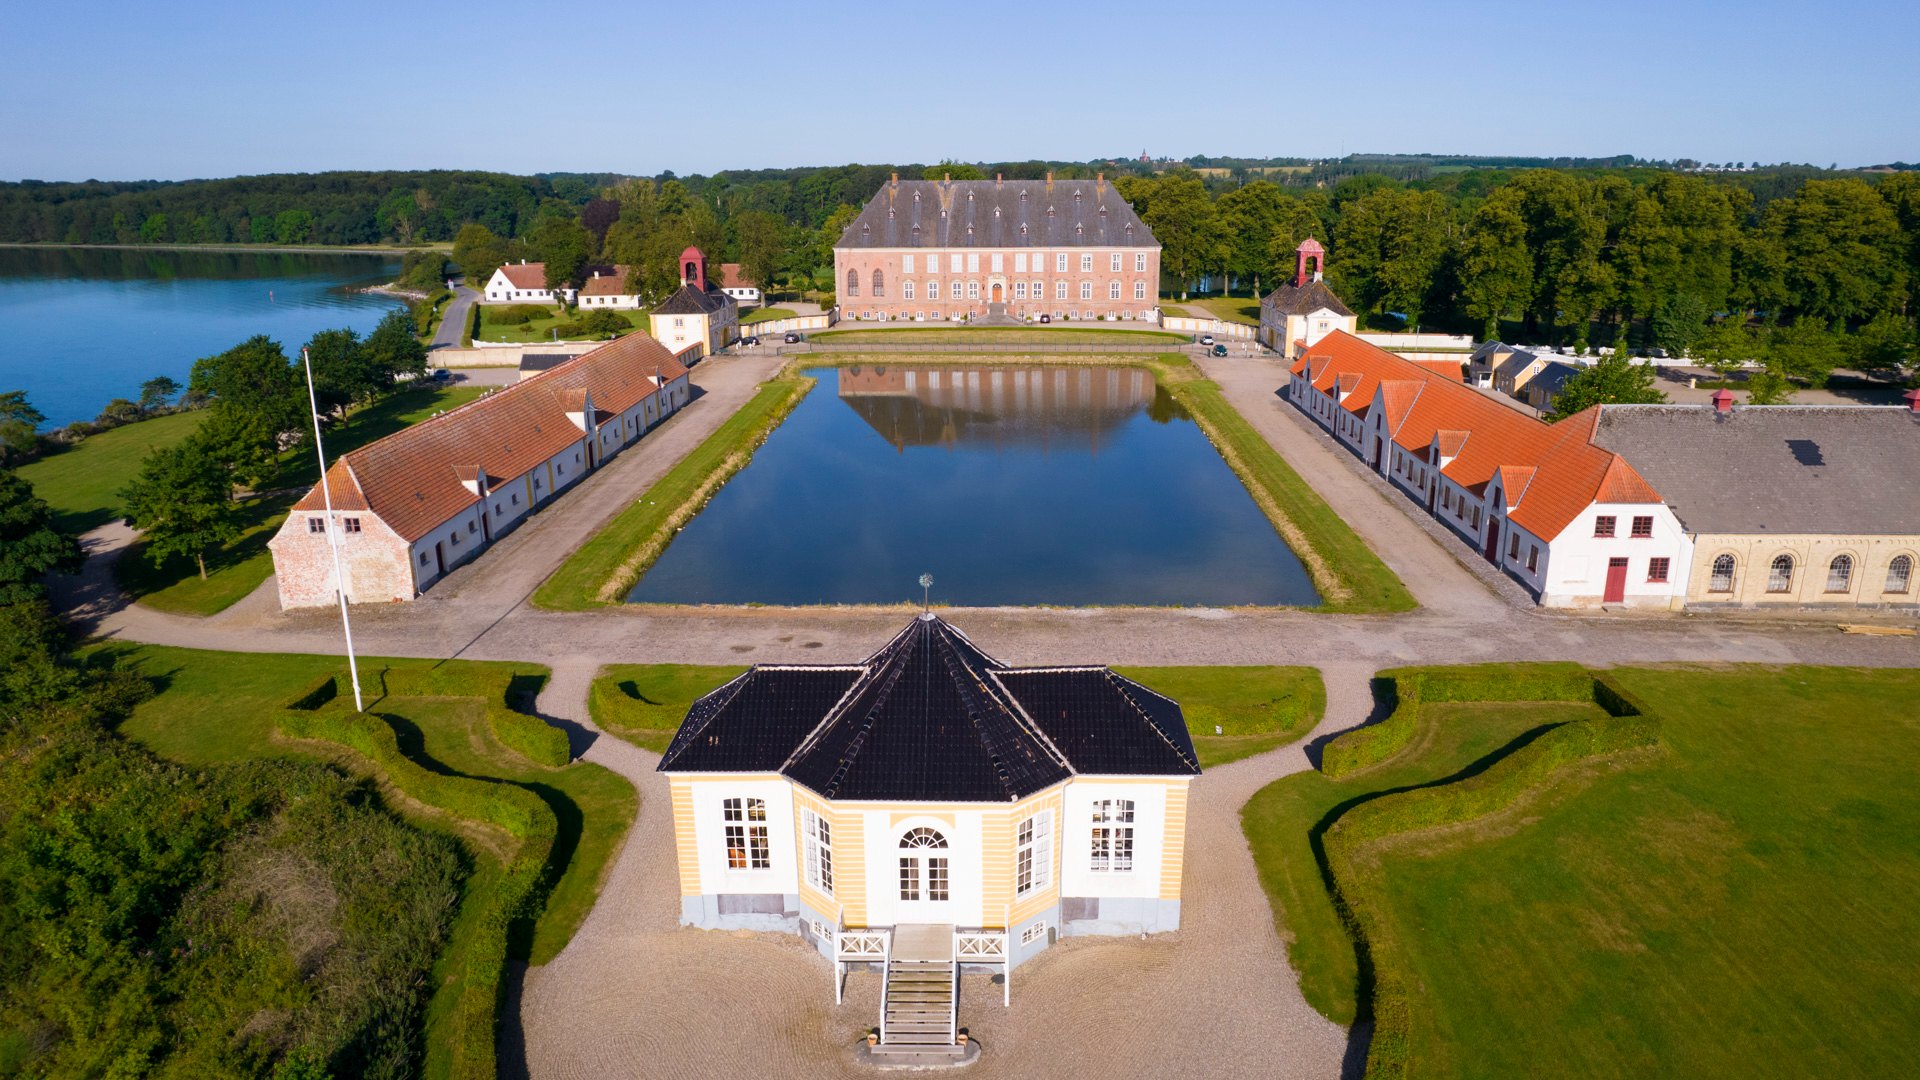 Dronefoto af Valdemars Slot på Tåsinge i Svendborg